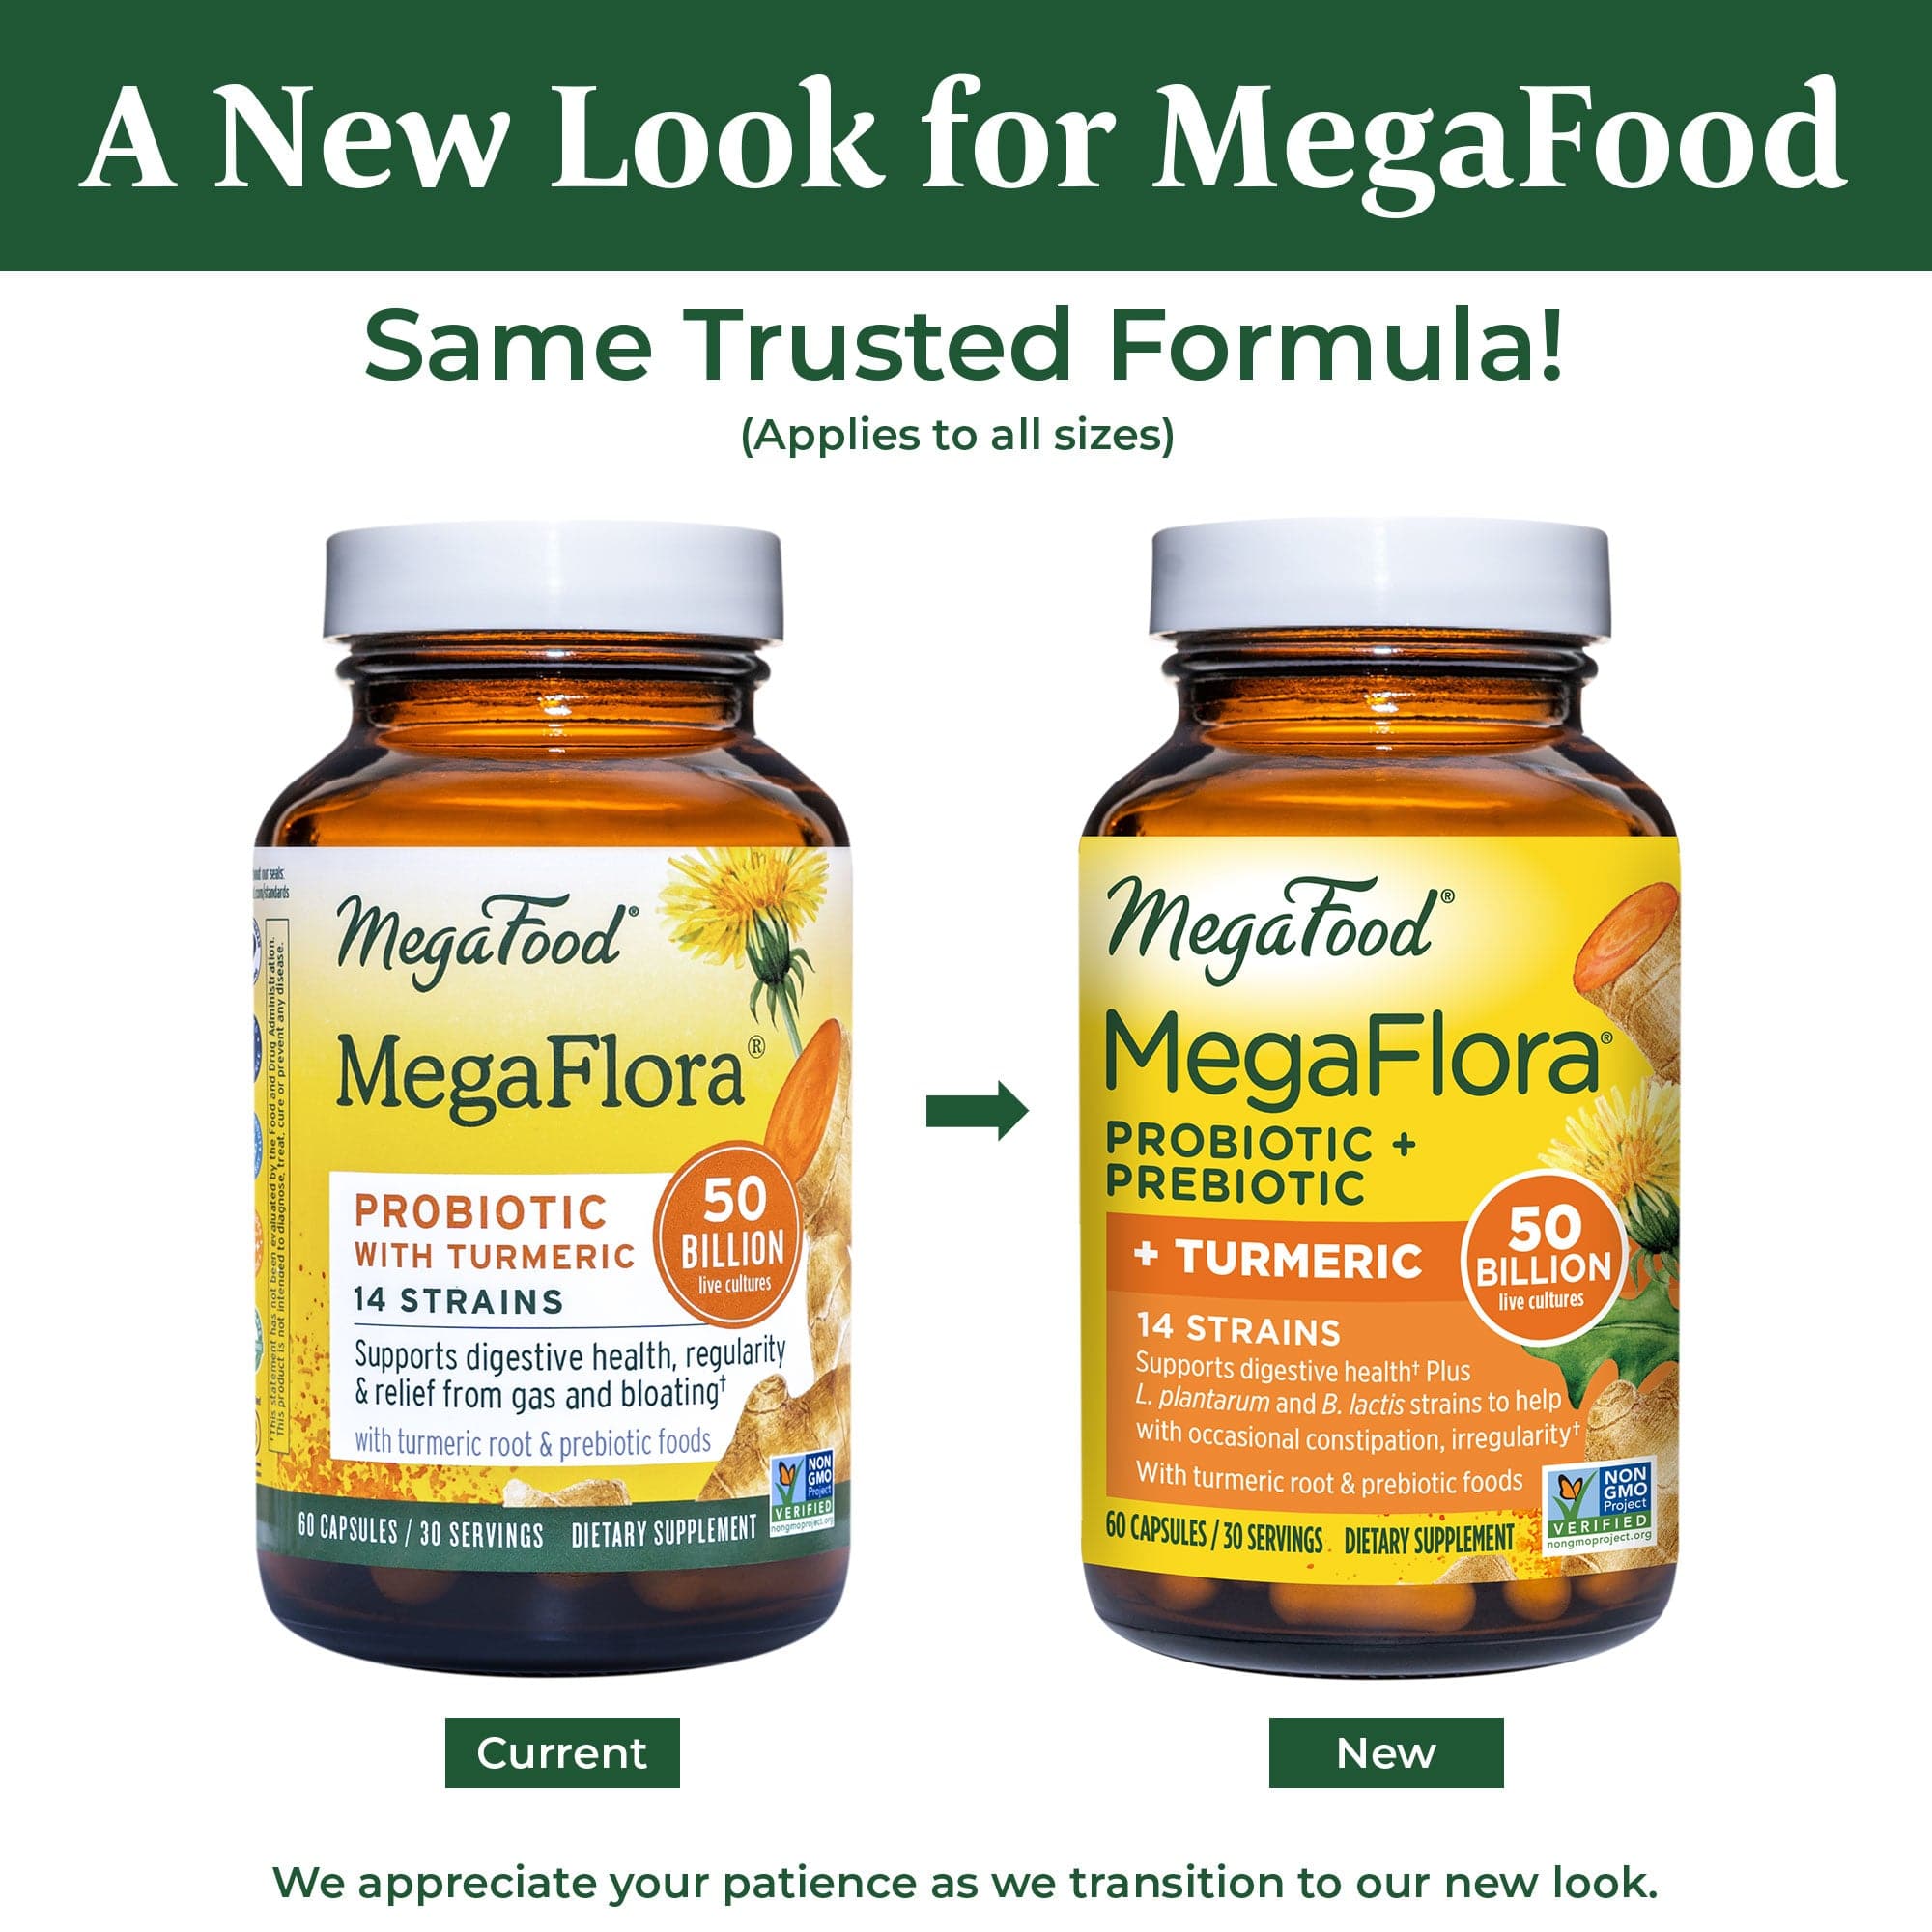 MegaFood MegaFlora Probiotic + Prebiotic + Turmeric (Formerly MegaFlora Probiotic with Turmeric)